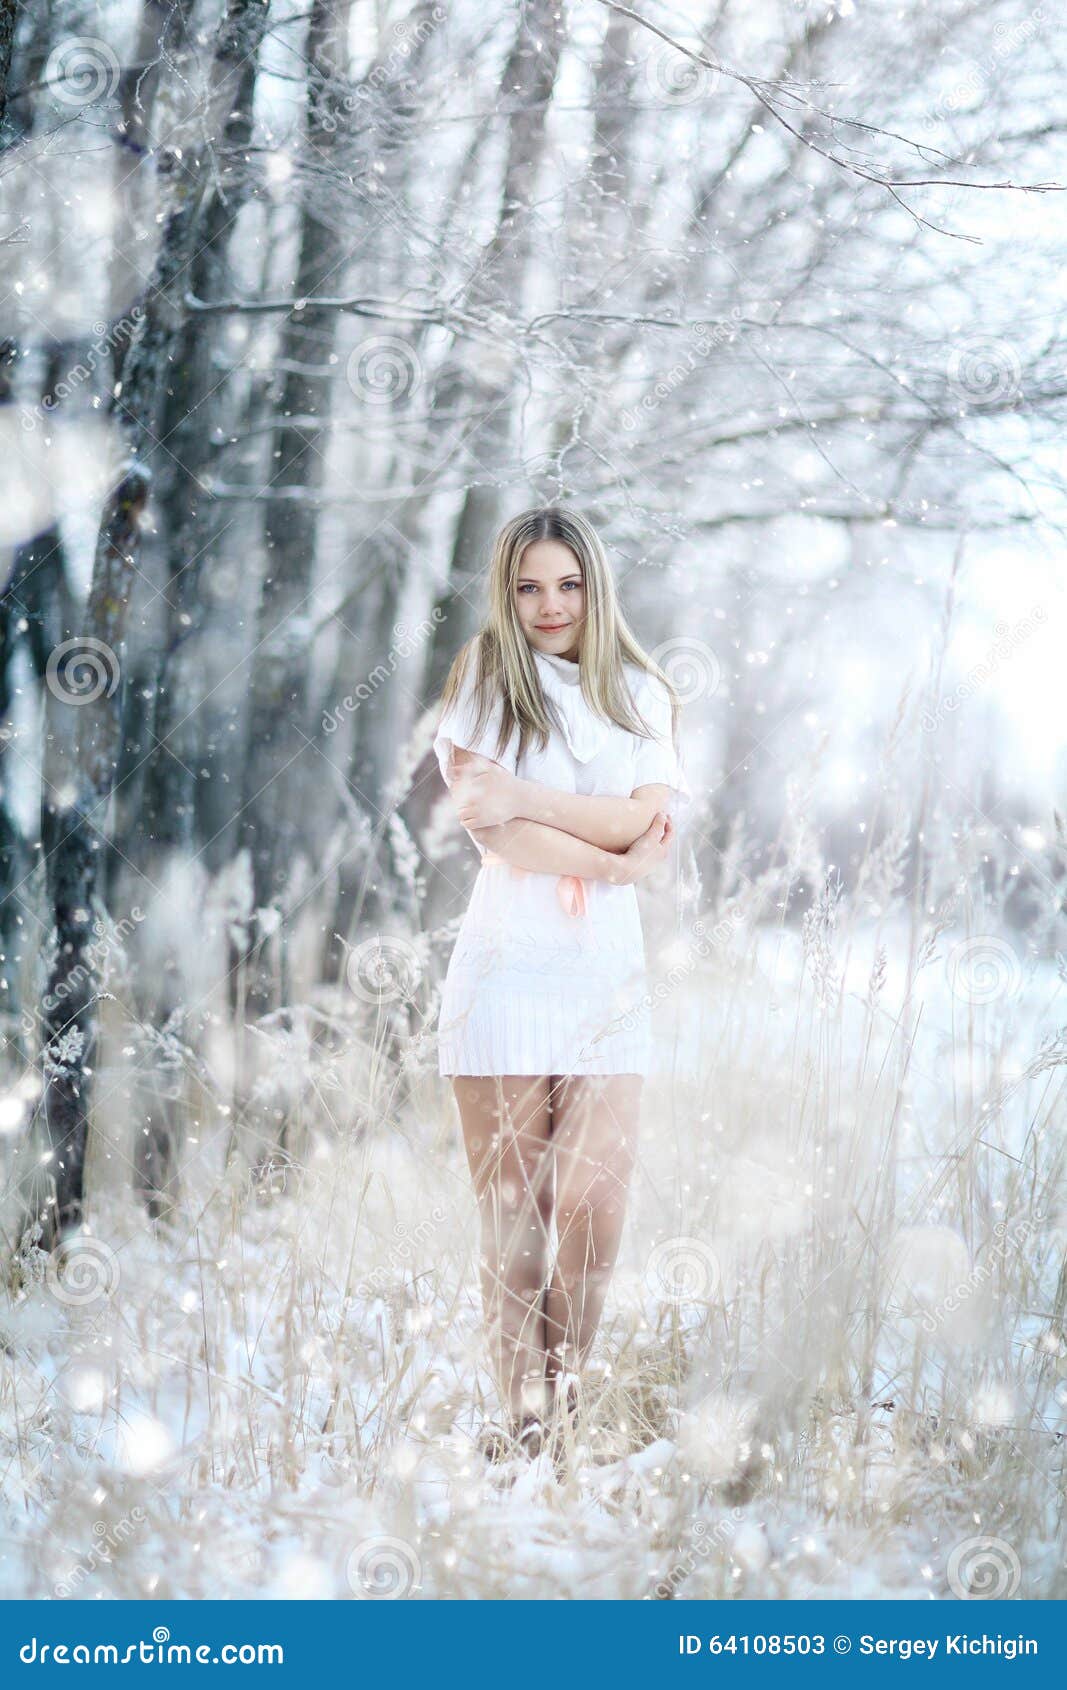 Фото Природа Девушка Зима